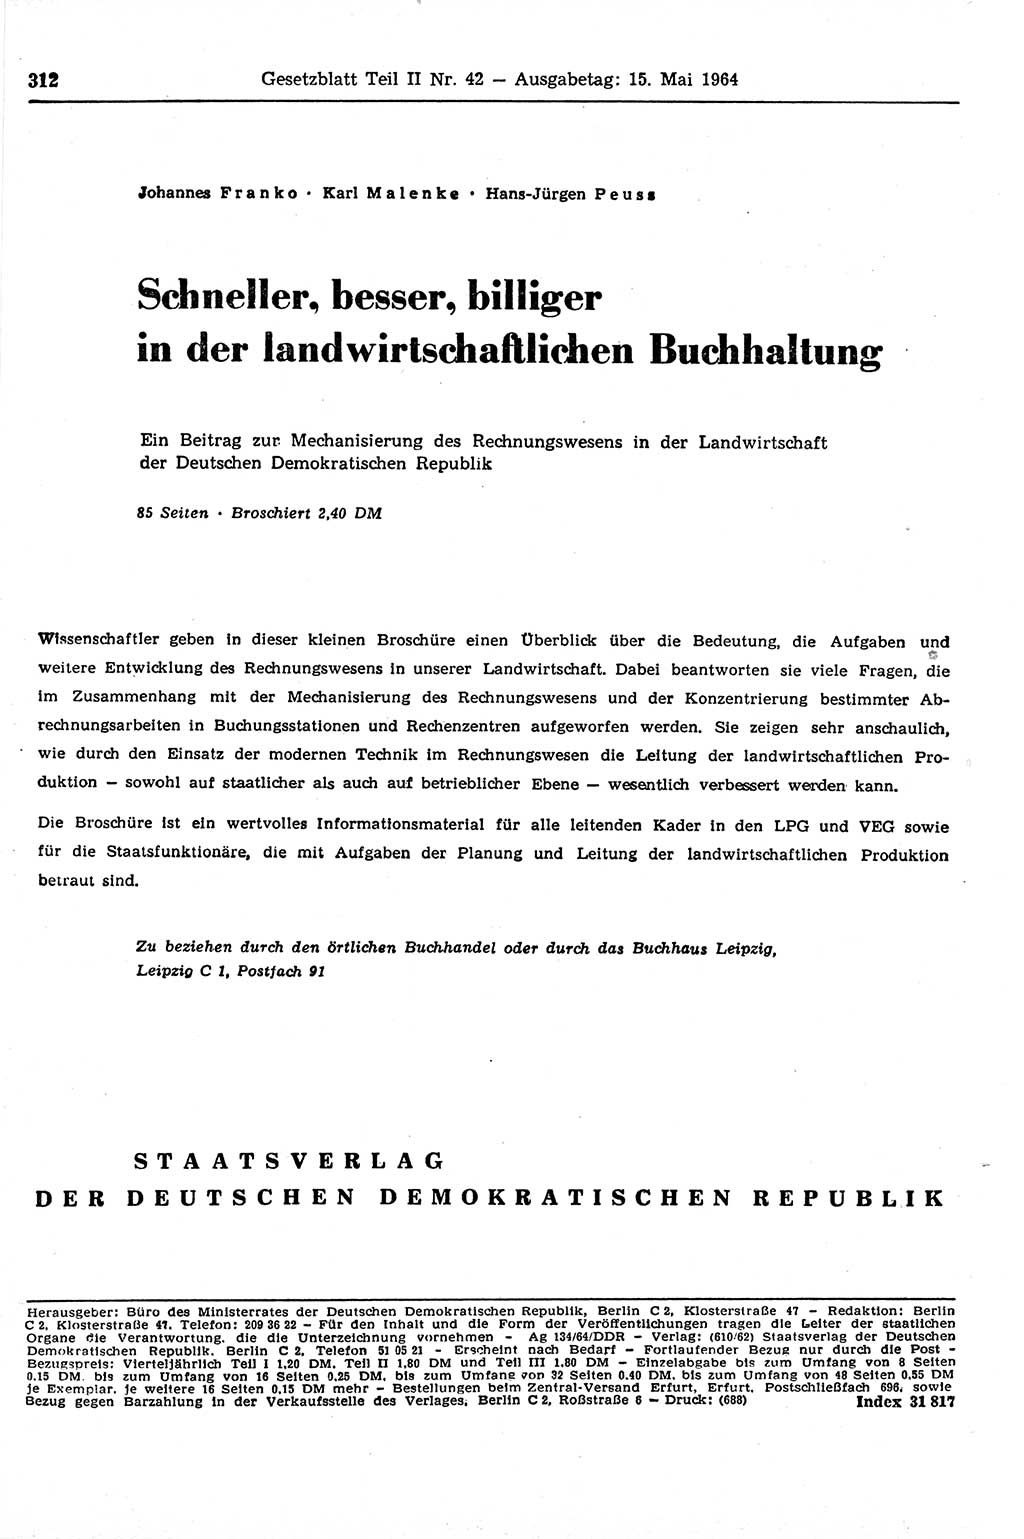 Gesetzblatt (GBl.) der Deutschen Demokratischen Republik (DDR) Teil ⅠⅠ 1964, Seite 312 (GBl. DDR ⅠⅠ 1964, S. 312)